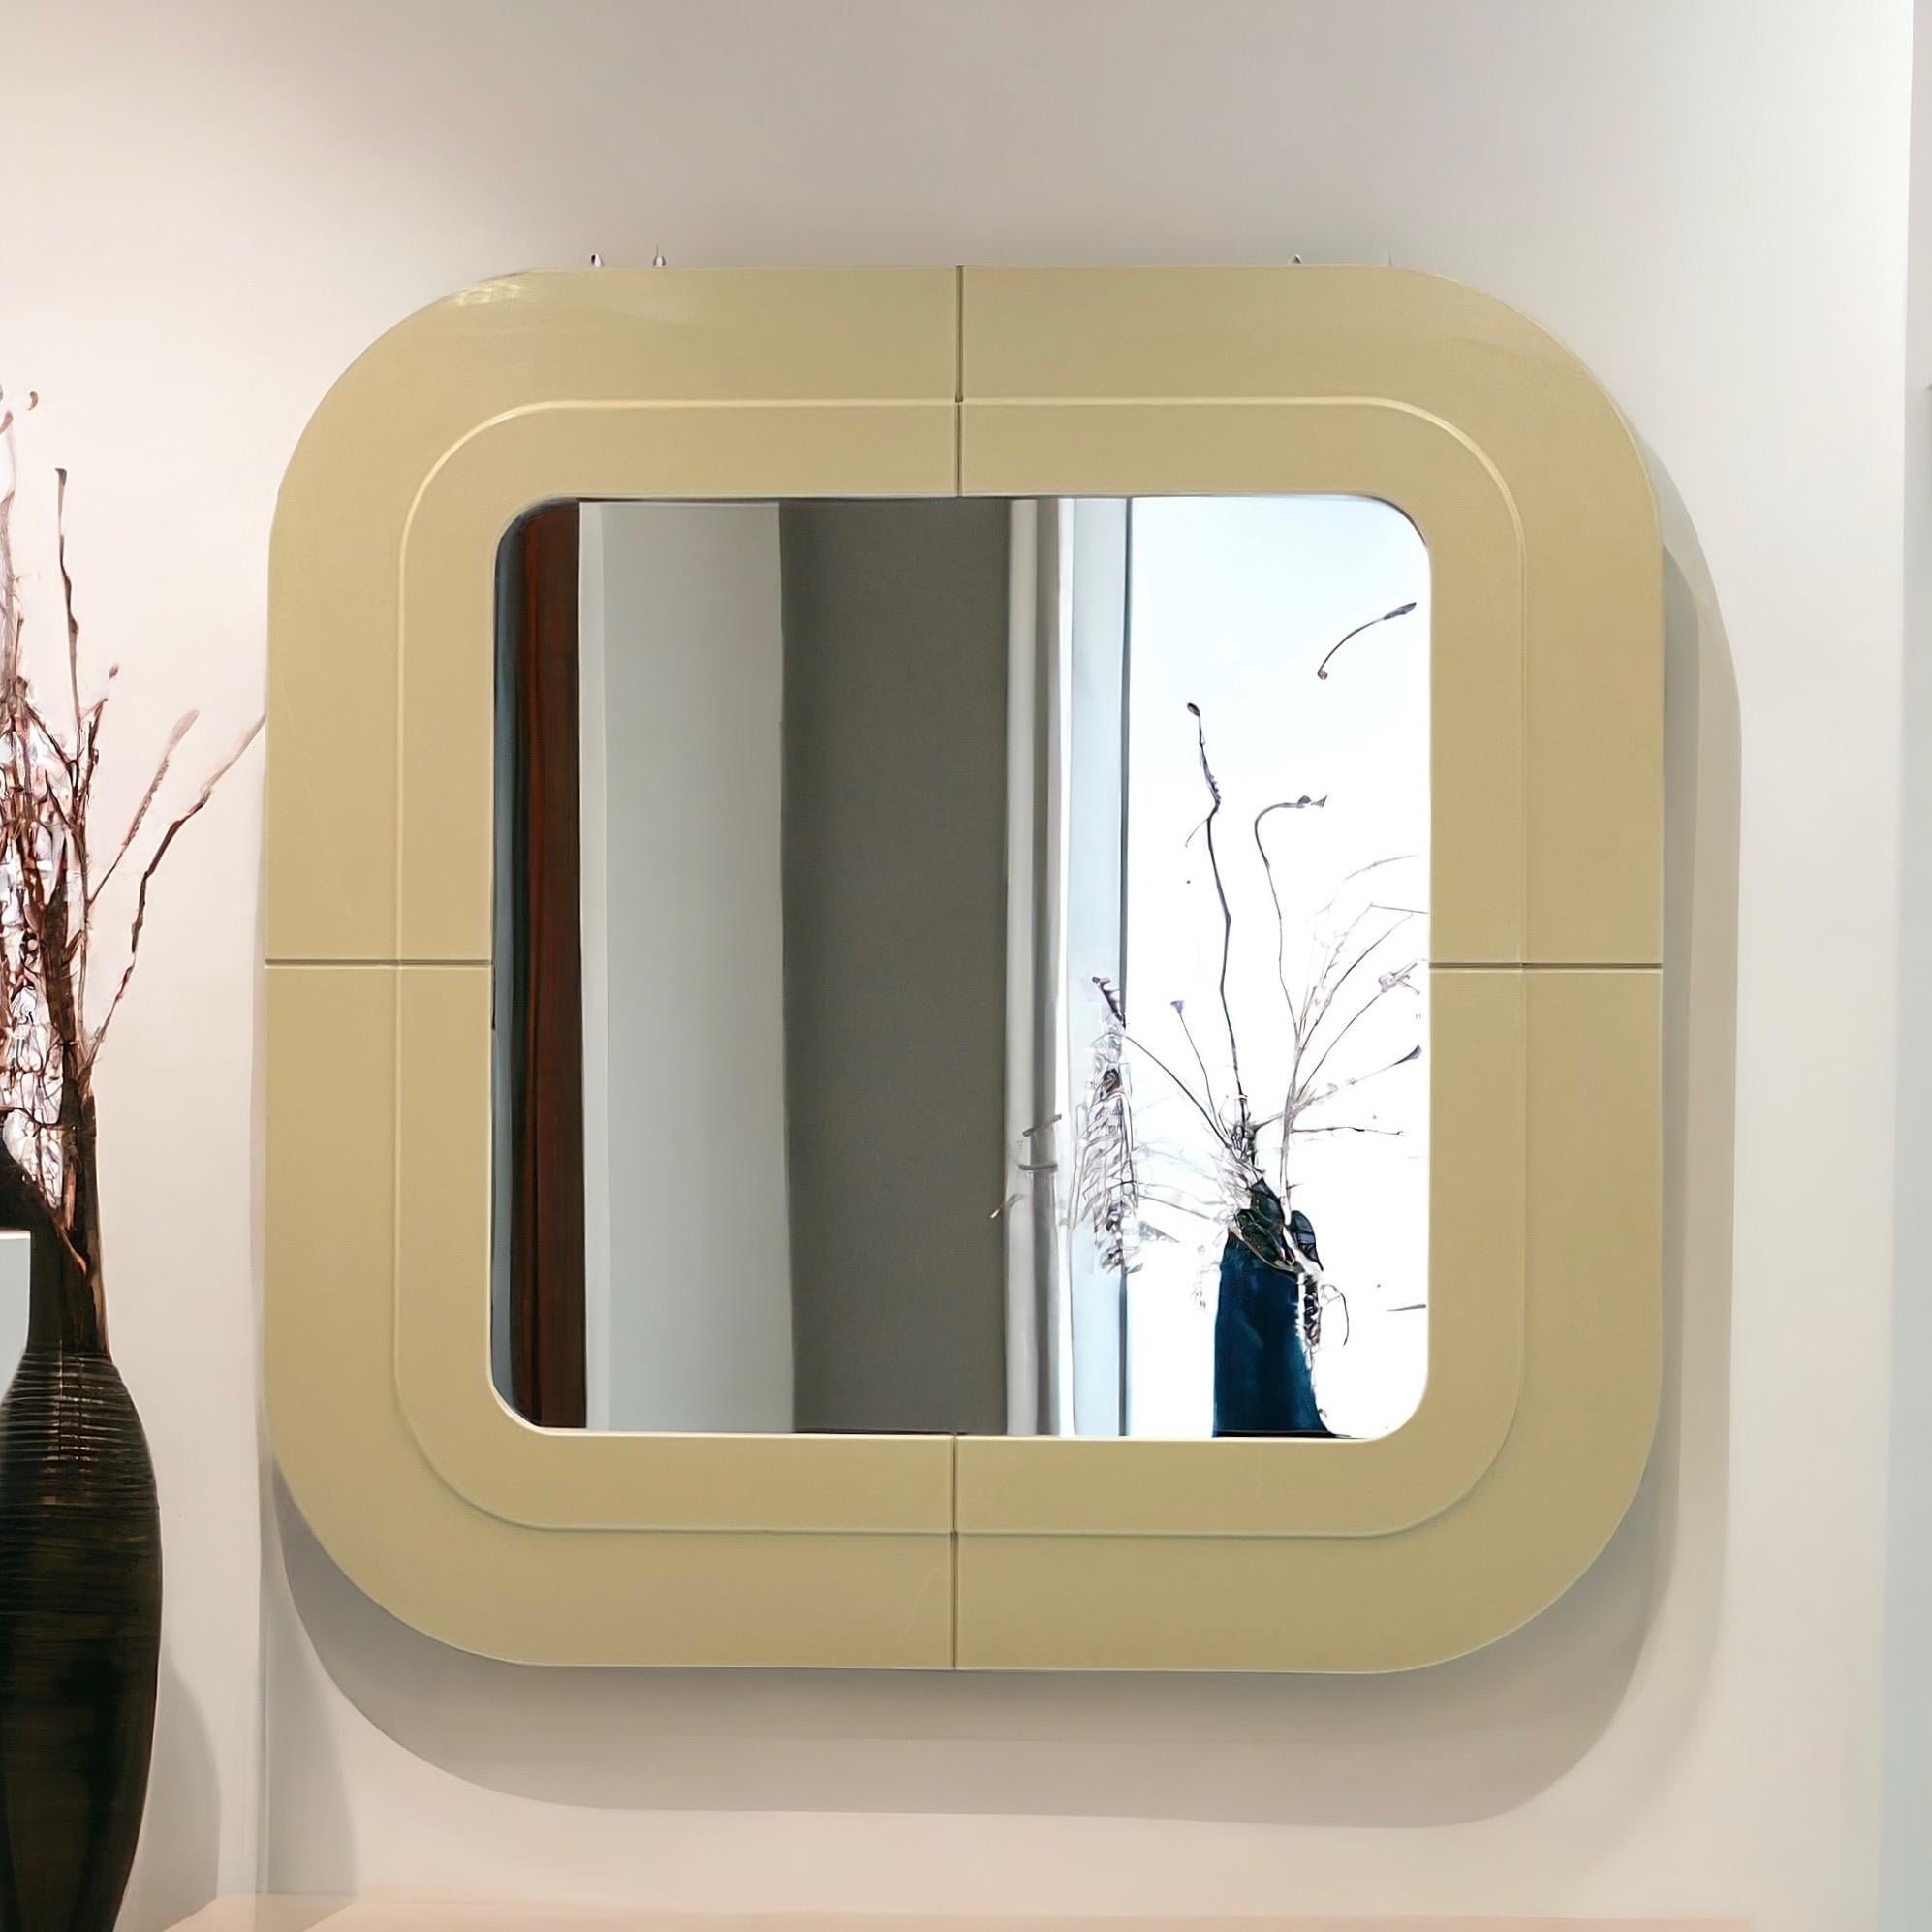 Magnifique et iconique miroir Kartell vintage en blanc cassé, conçu par Anna Castelli Ferrieri dans les années 60.

Ce chef-d'œuvre de la modernité du milieu du siècle présente un cadre carré aux angles élégamment incurvés, fabriqué en plastique